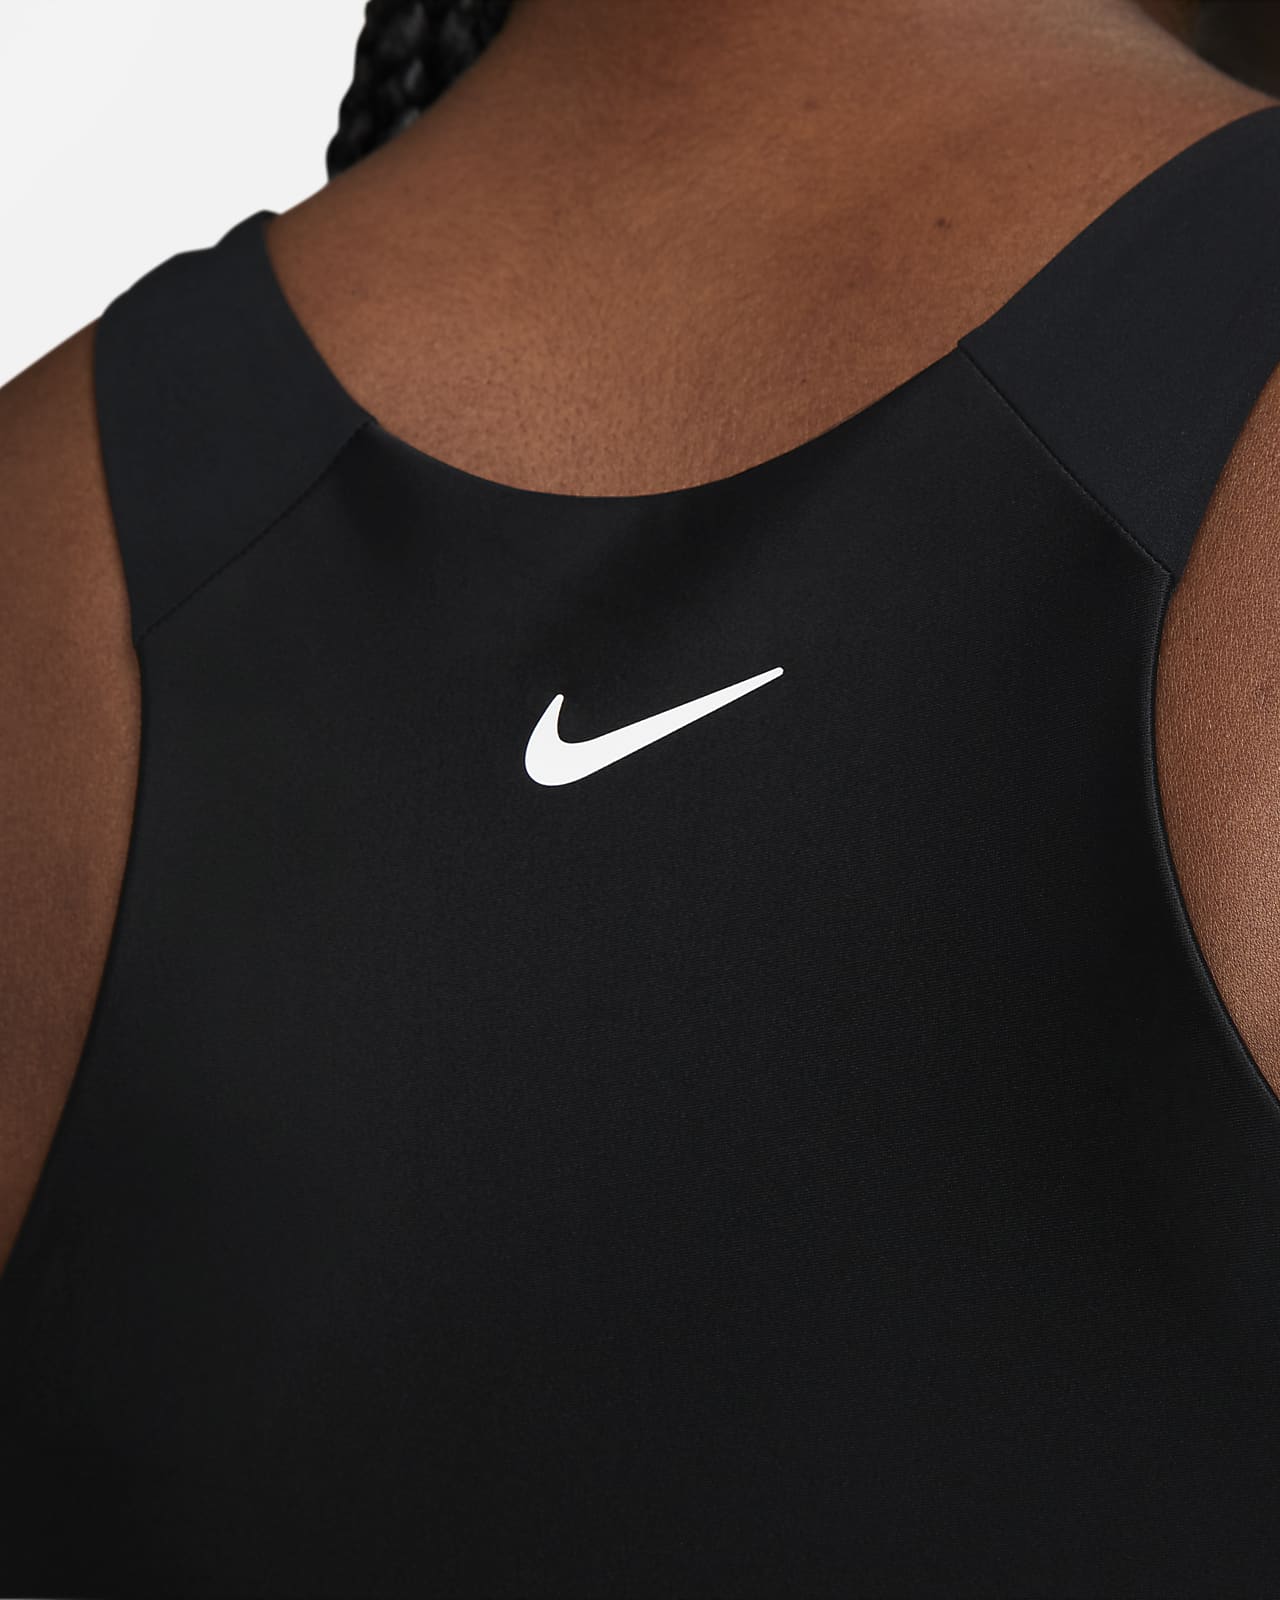 Waakzaamheid bloemblad achterstalligheid Nike Pro Dri-FIT cropped tanktop voor dames. Nike NL